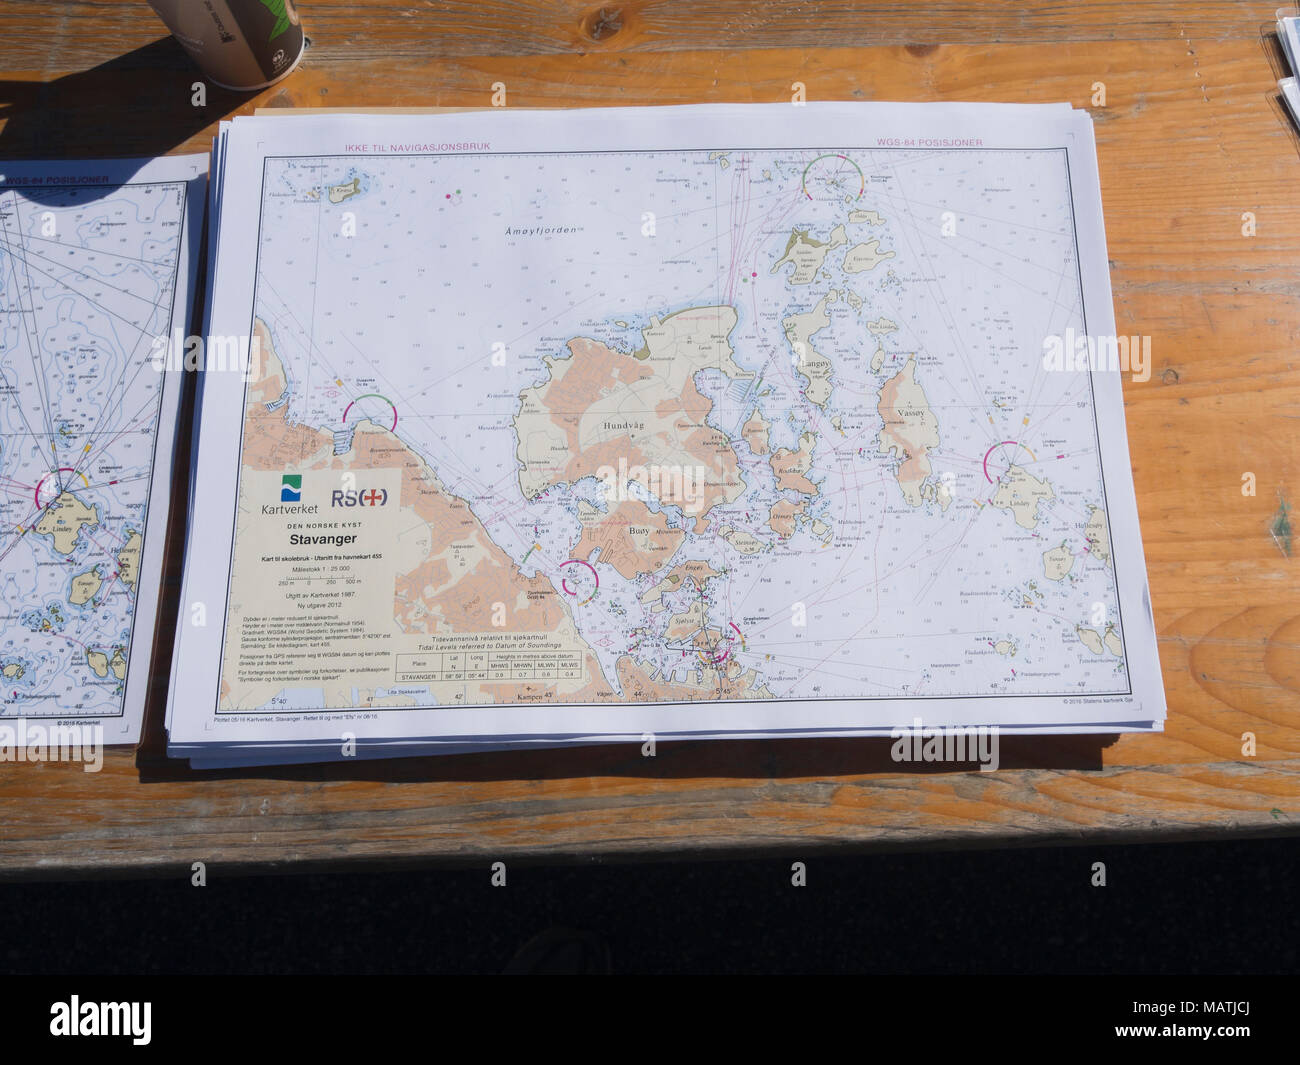 Pile de cartes marines détaillées sur une table, montrant Boknafjorden et le port de Stavanger en Norvège Banque D'Images